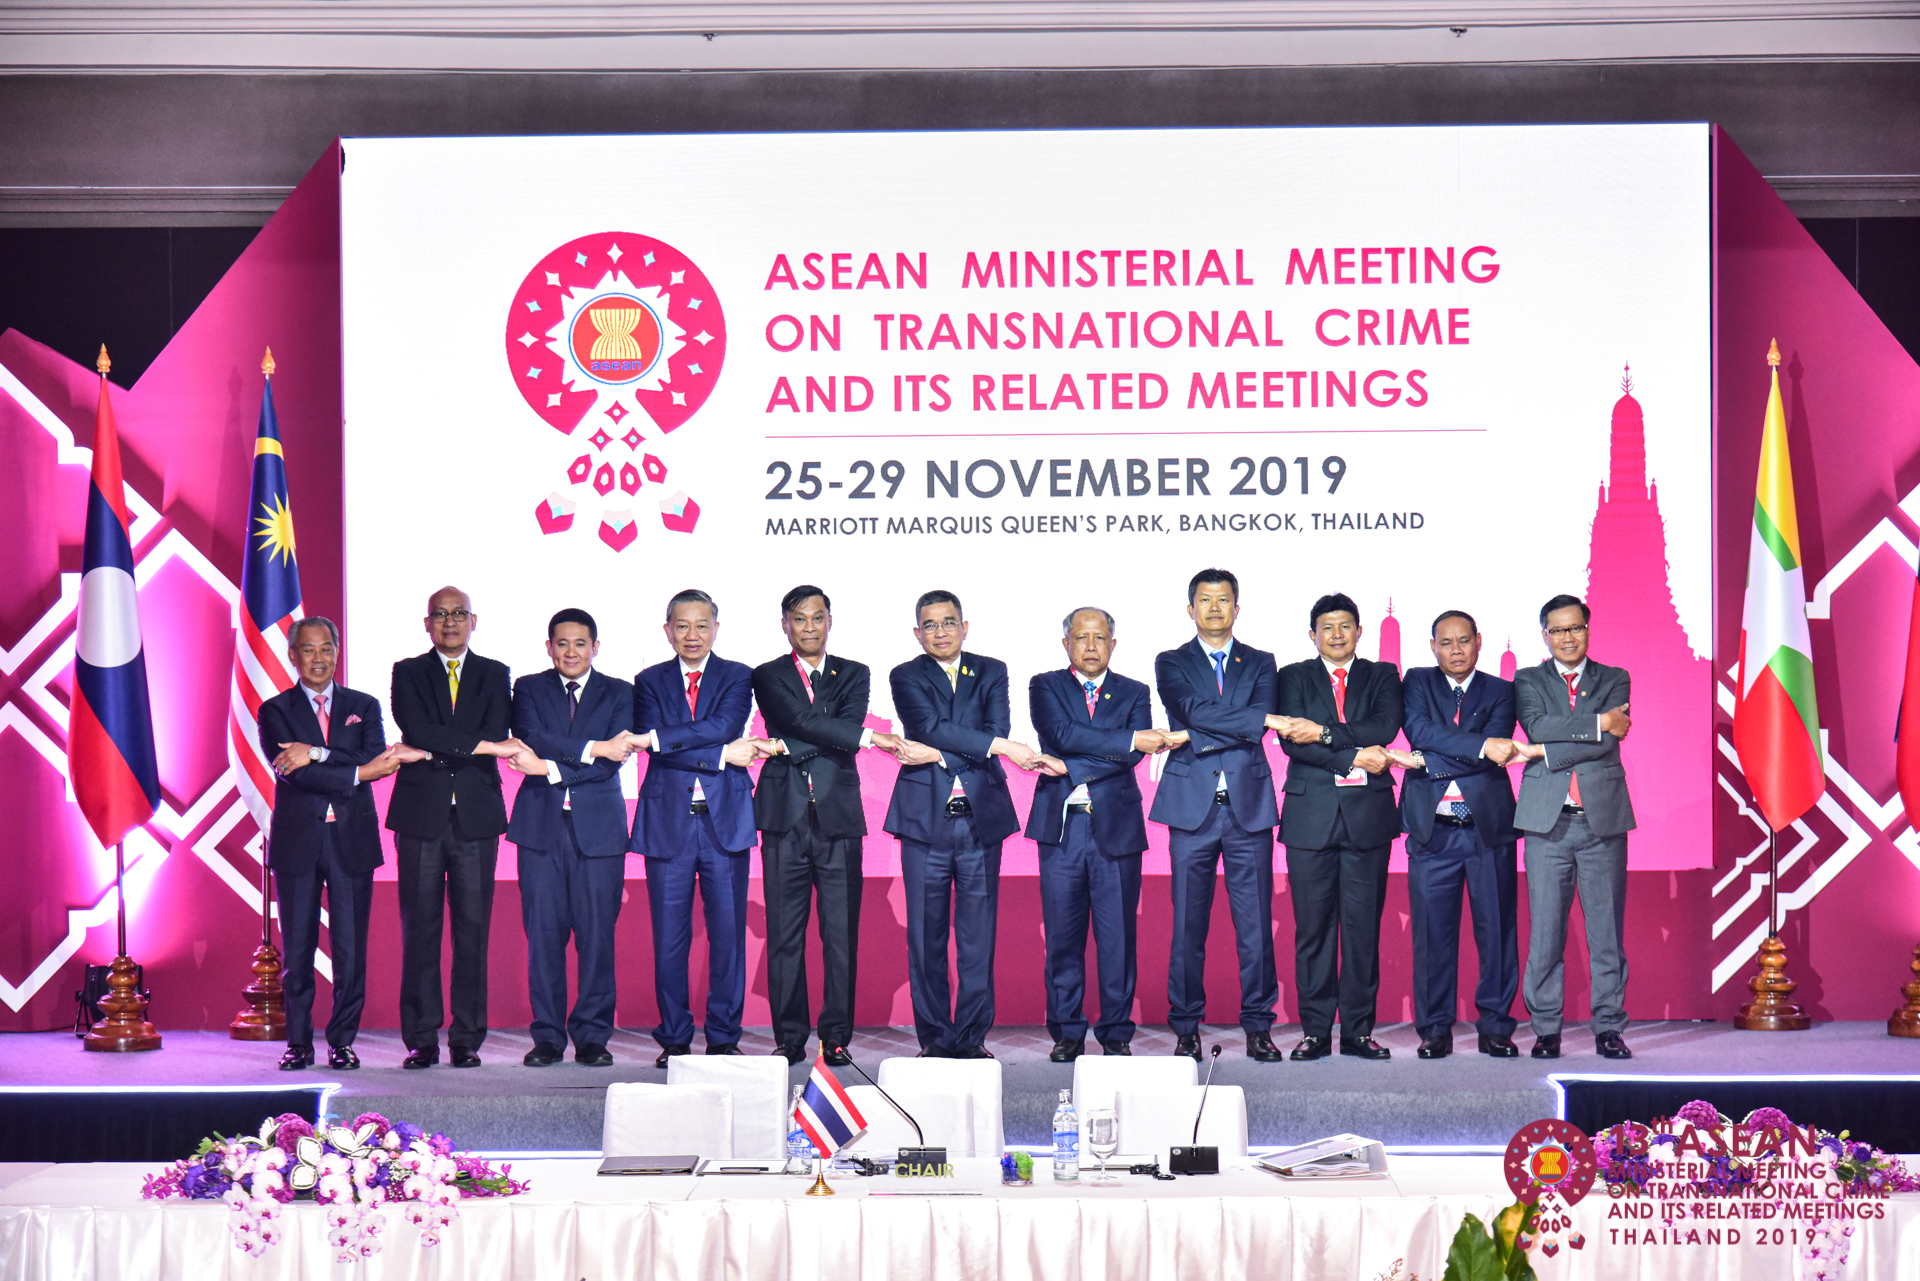 RI dan enam negara ASEAN tandatangani MoU di AMMTC ke-17 Labuan Bajo